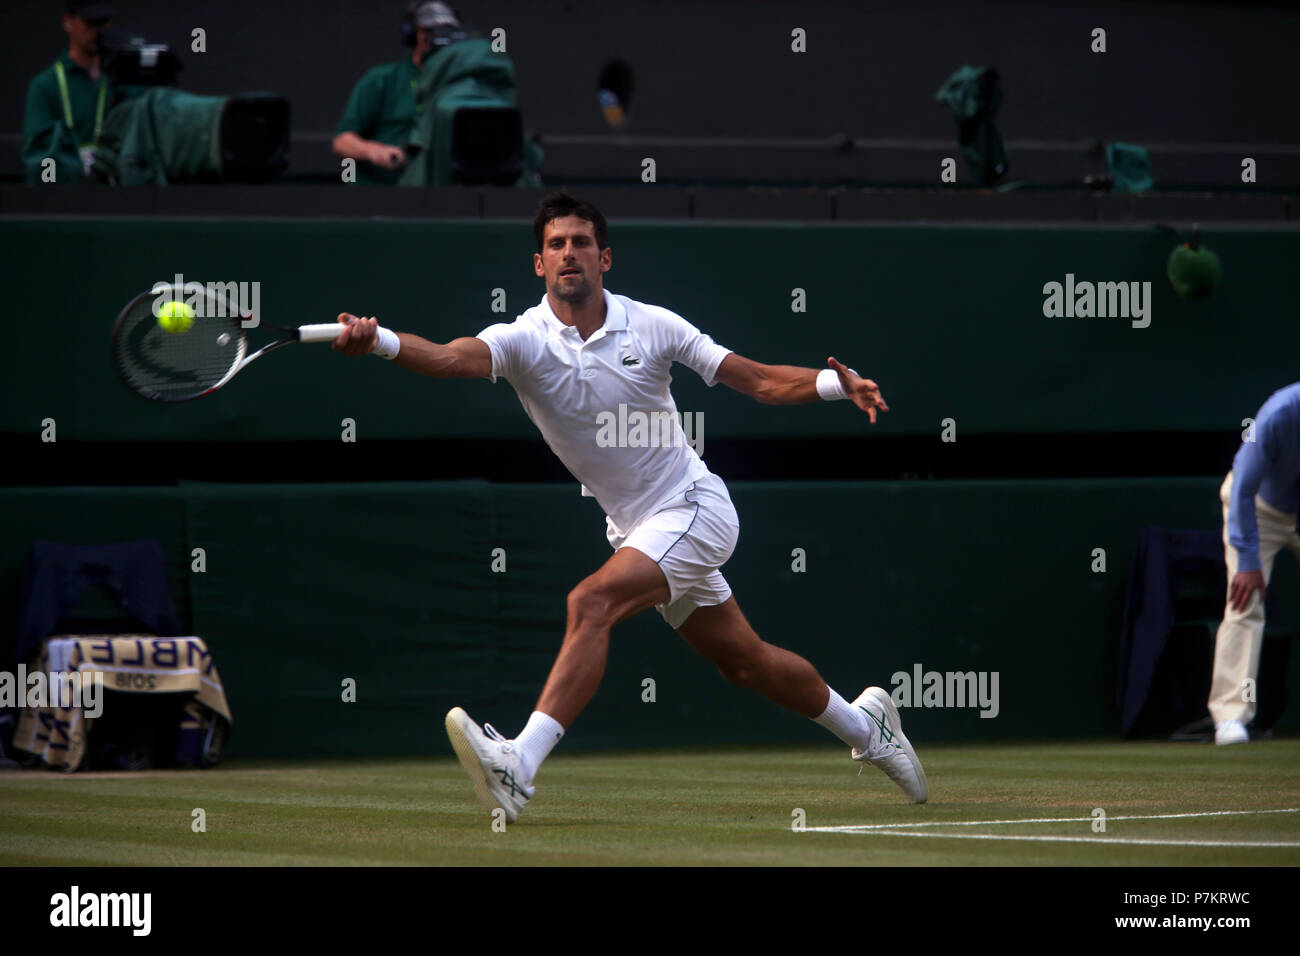 Londres, Royaume-Uni. 7 juillet 2018. Wimbledon Tennis : Novak Djokovic lors de son troisième match contre la Grande-Bretagne's Kyle Edmund sur le Court Central de Wimbledon aujourd'hui. Crédit : Adam Stoltman/Alamy Live News Banque D'Images